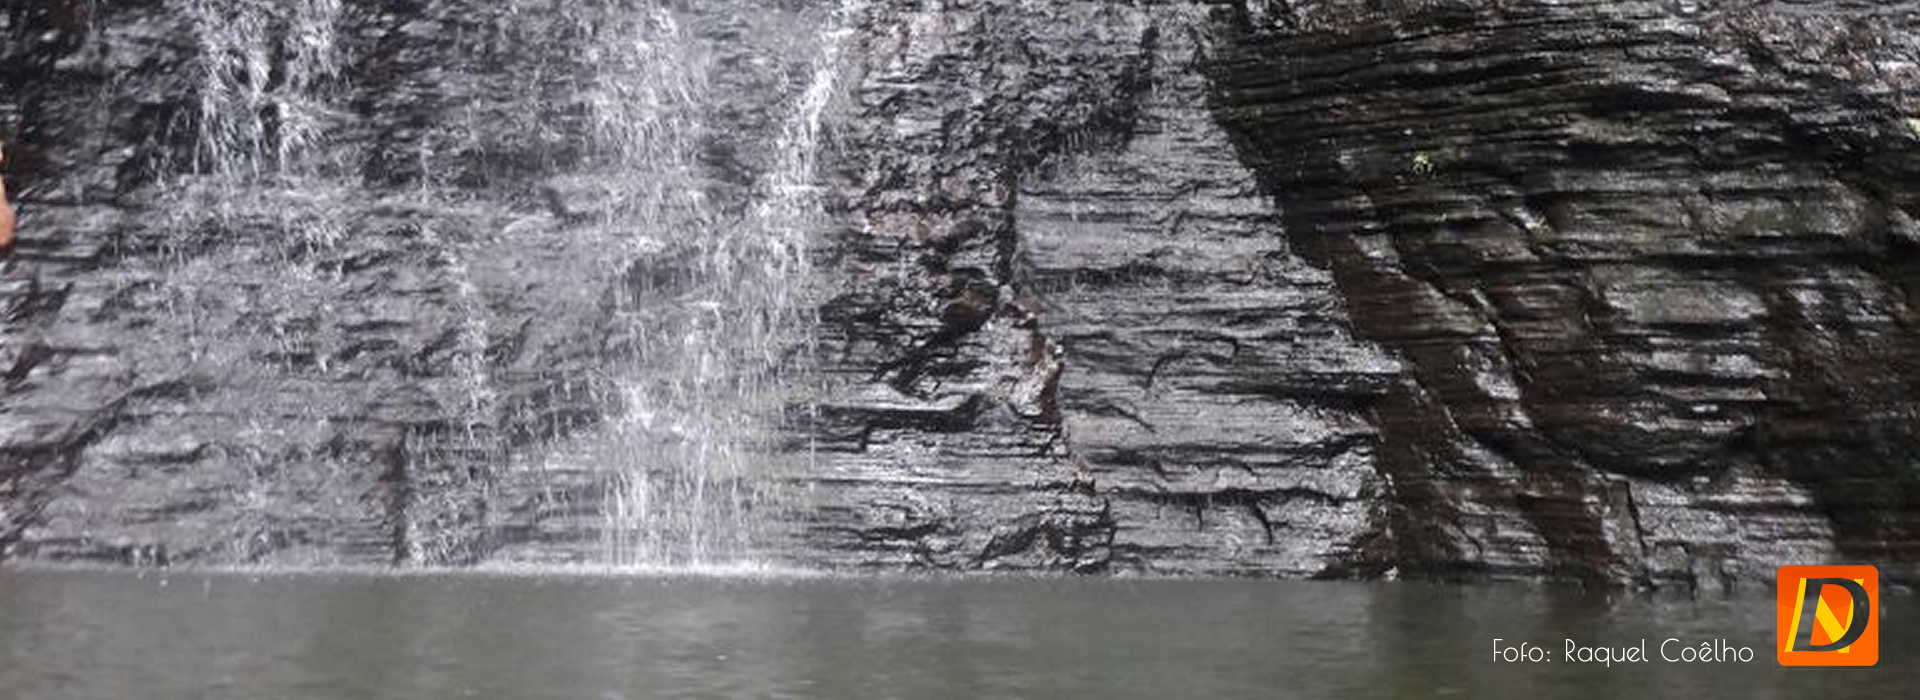 Cachoeira Urubu Rei (cachoeira das araras) - festival de inverno